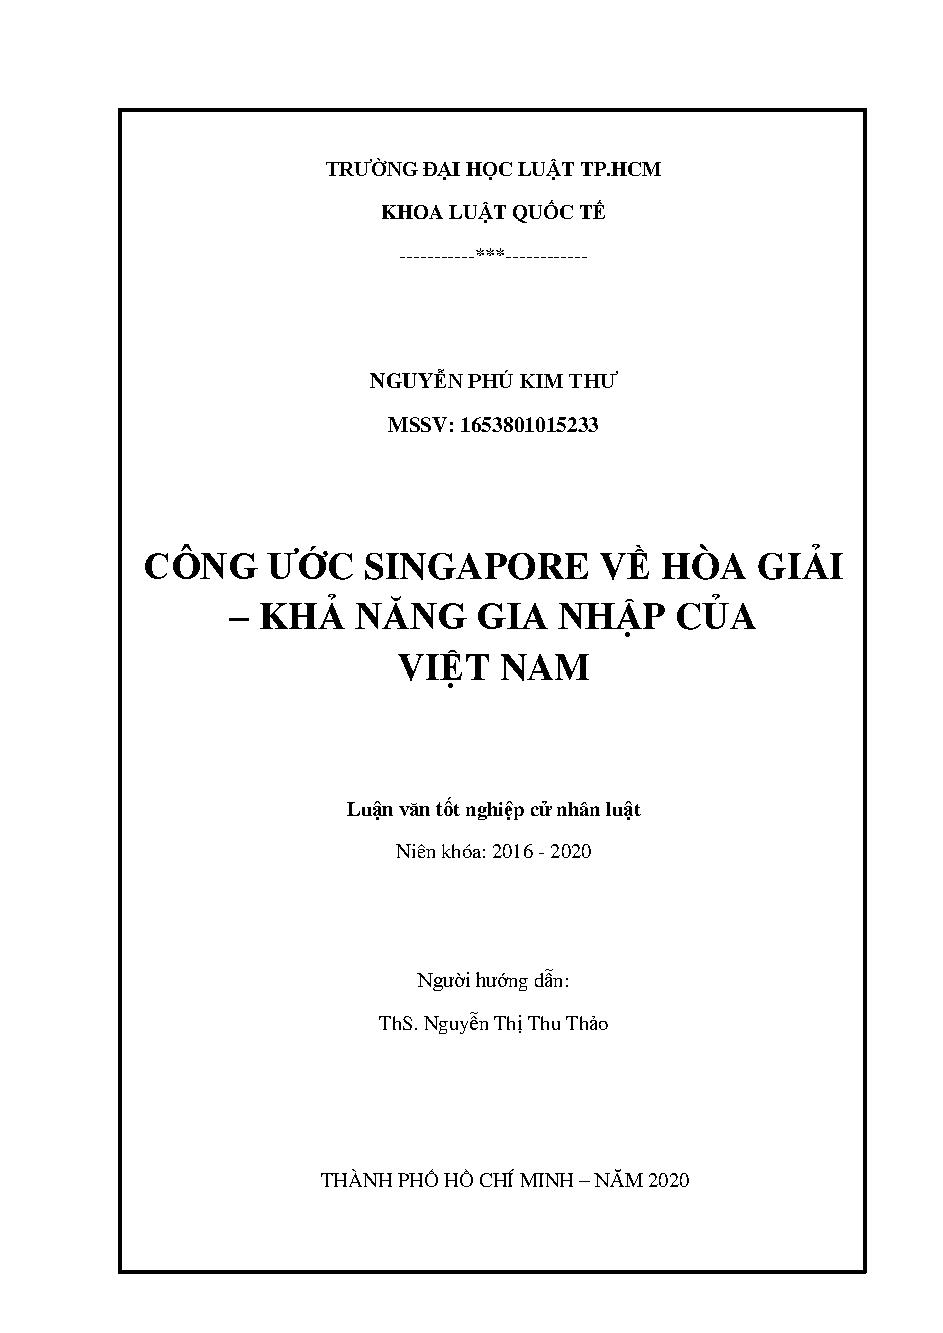 Công ước Singapore về hòa giải - Khả năng gia nhập của Việt Nam